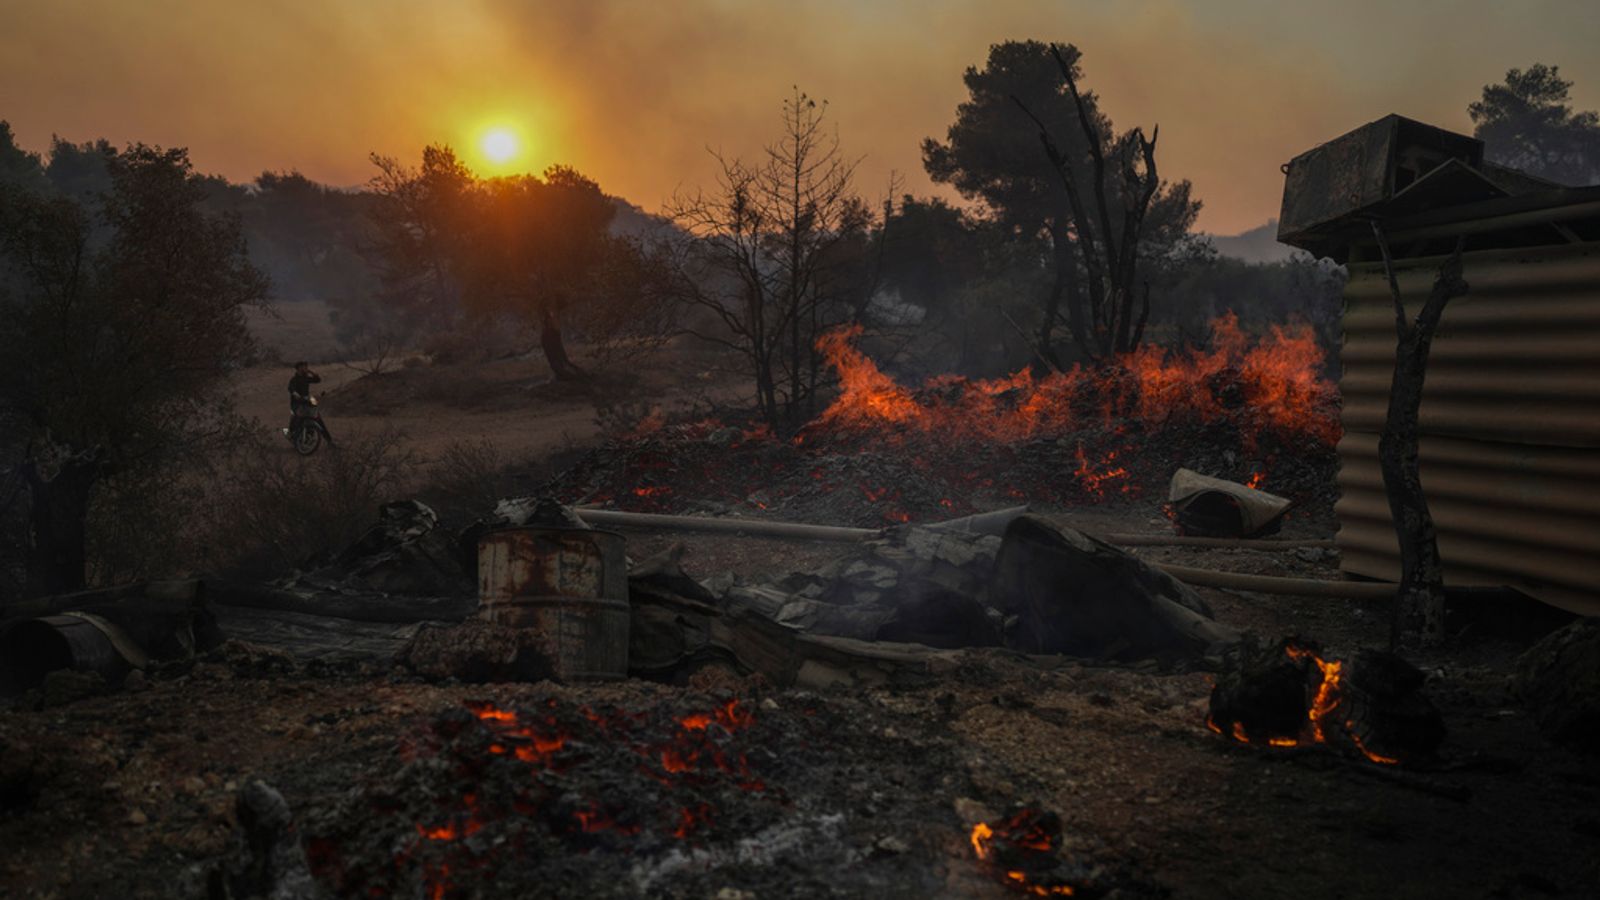 Météo extrême: des températures de plus de 40 ° C persistent en Europe et des incendies de forêt font rage en Grèce, alors que les États-Unis se préparent à une chaleur record |  Nouvelles du monde